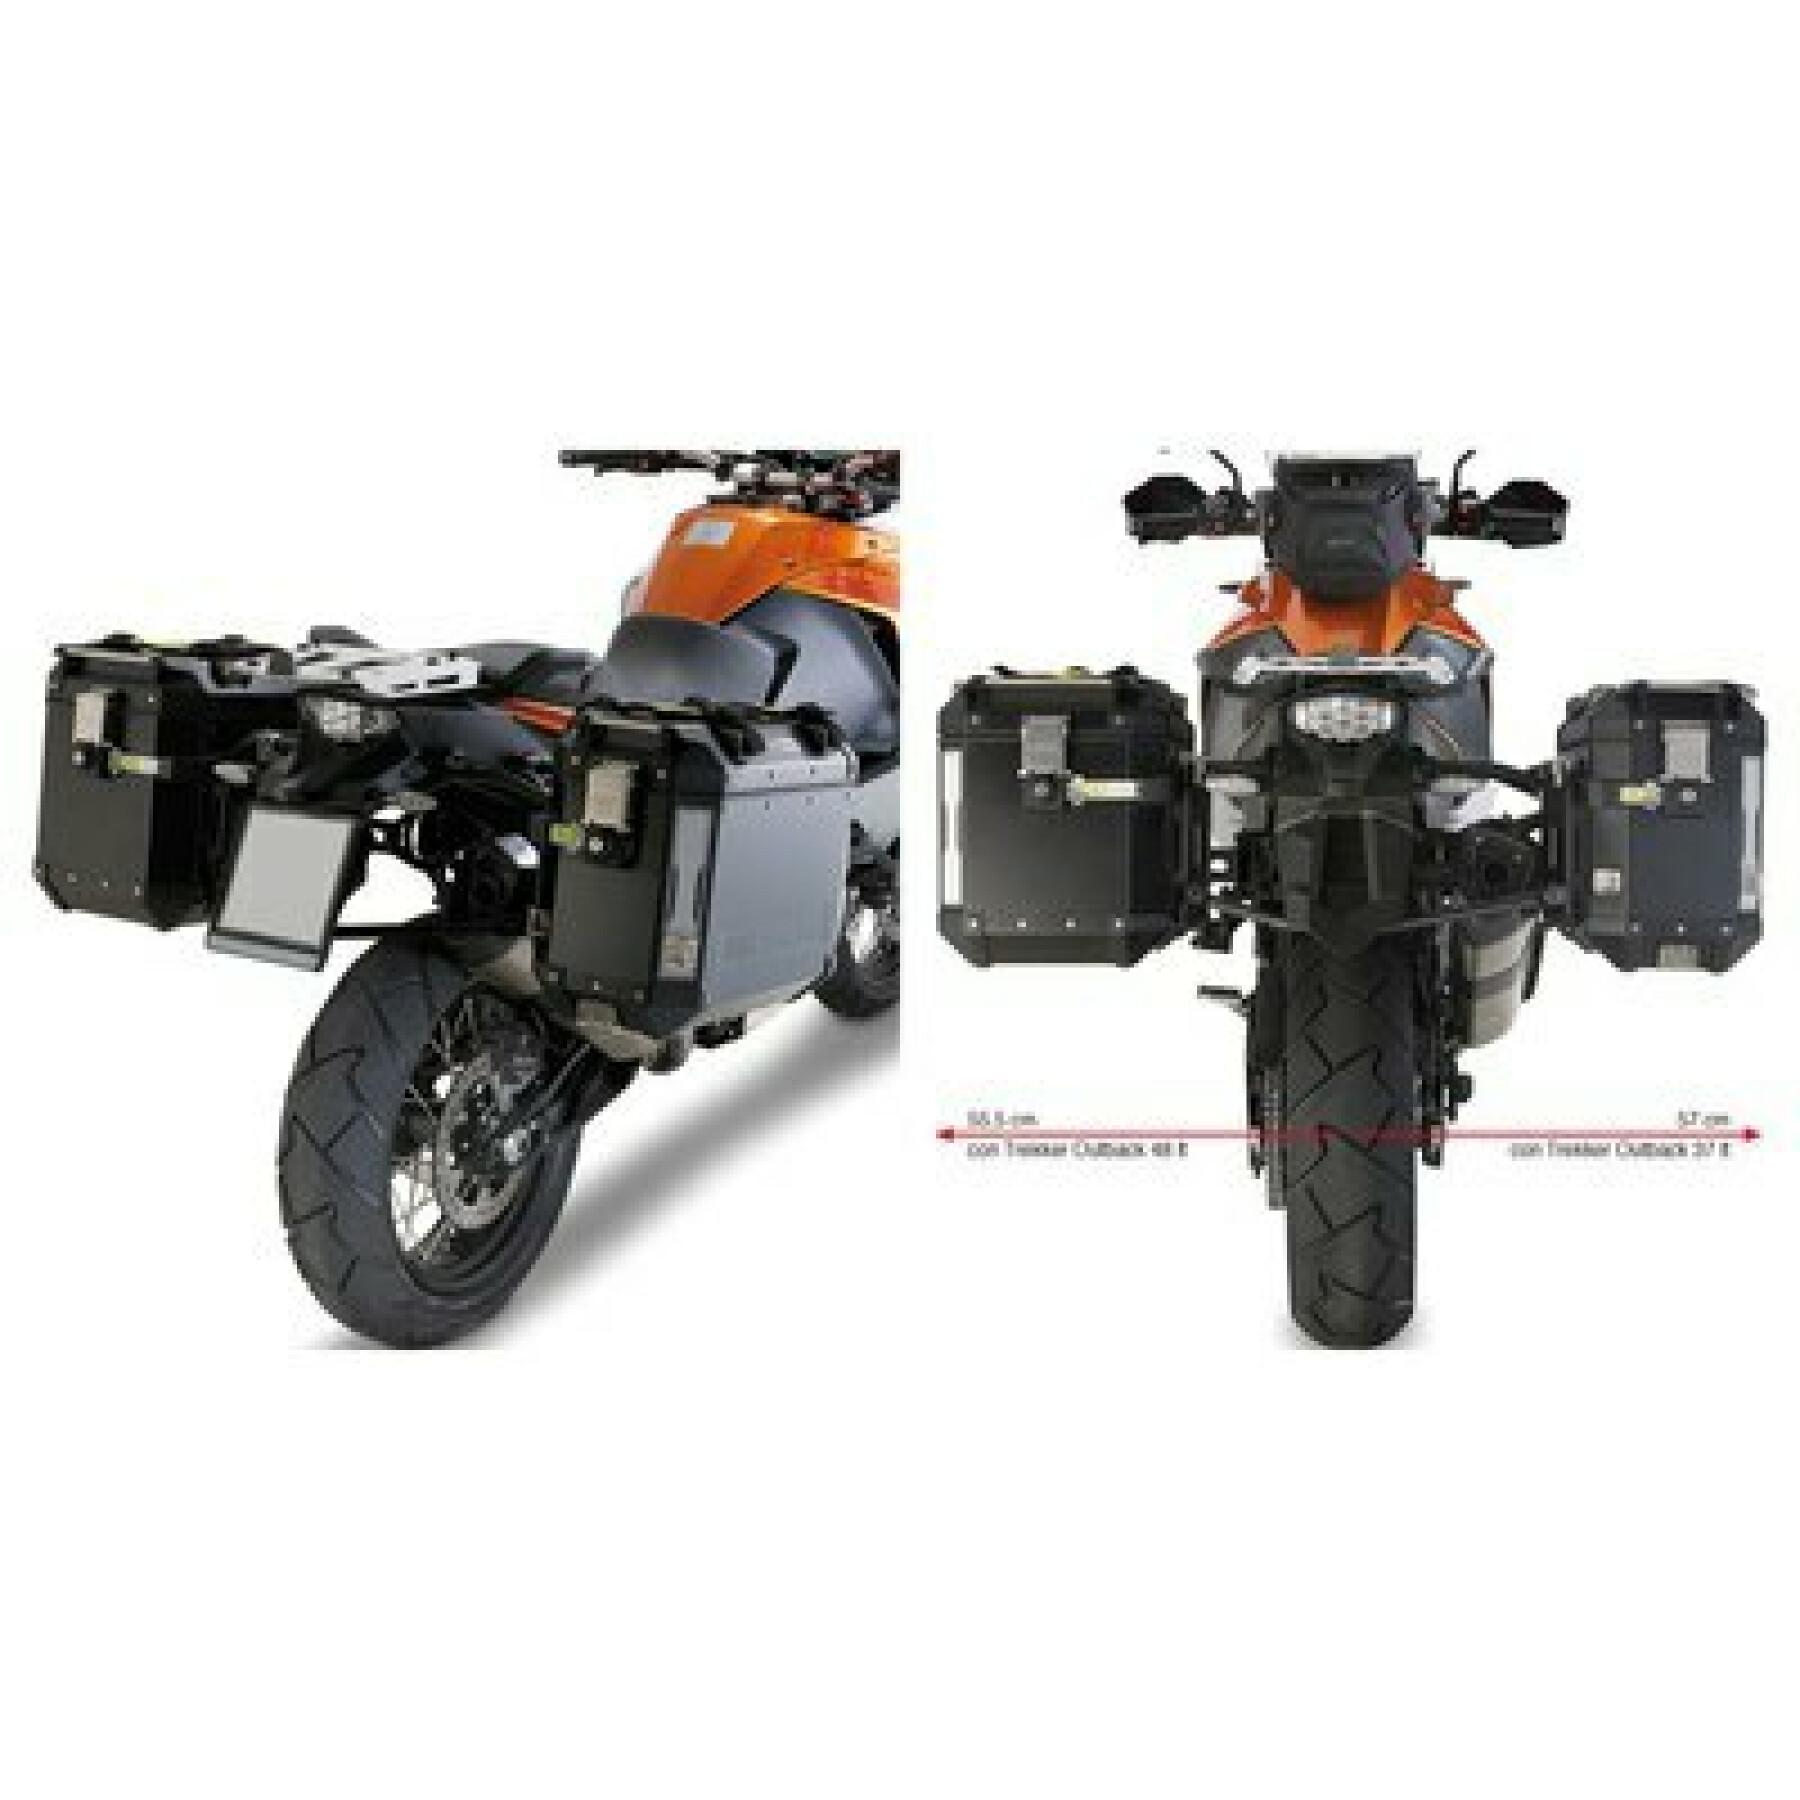 Support valises latérales moto Givi Monokey Cam-Side Ktm 1050 Adventure (15 À 16)